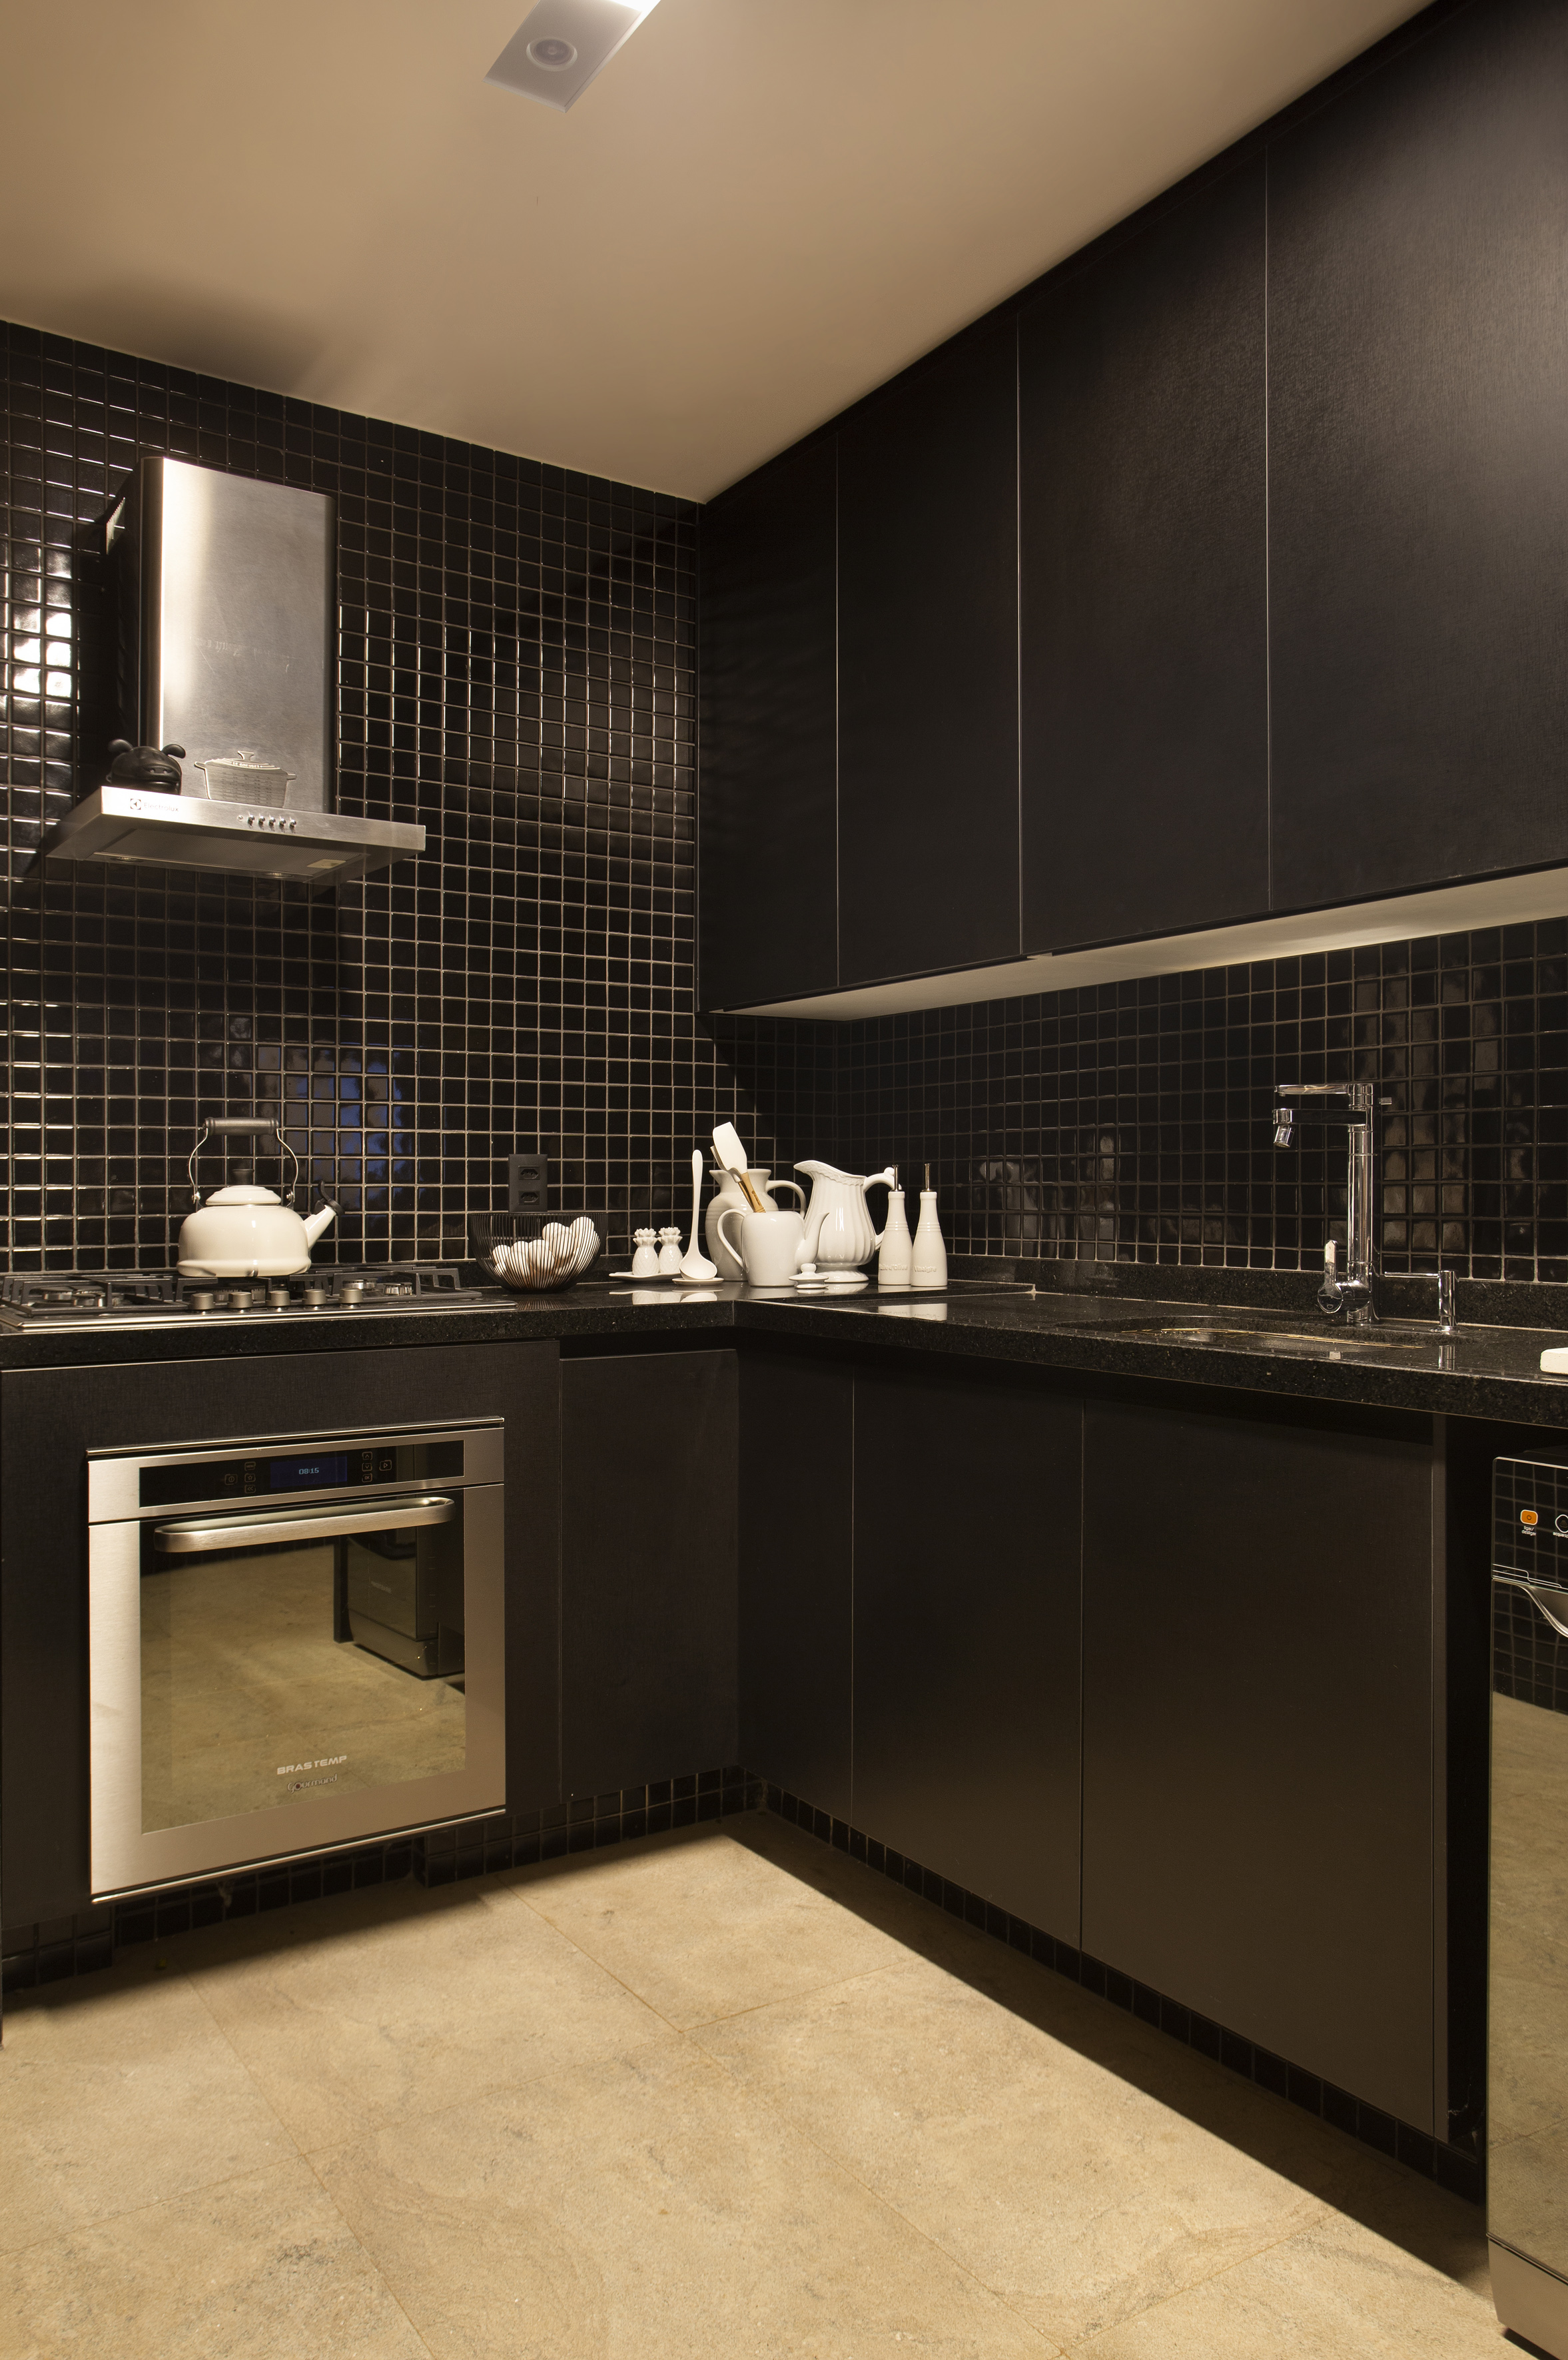 Projeto de Ricardo Melo e Rodrigo Passos. Na foto, cozinha com marcenaria e revestimentos pretos.